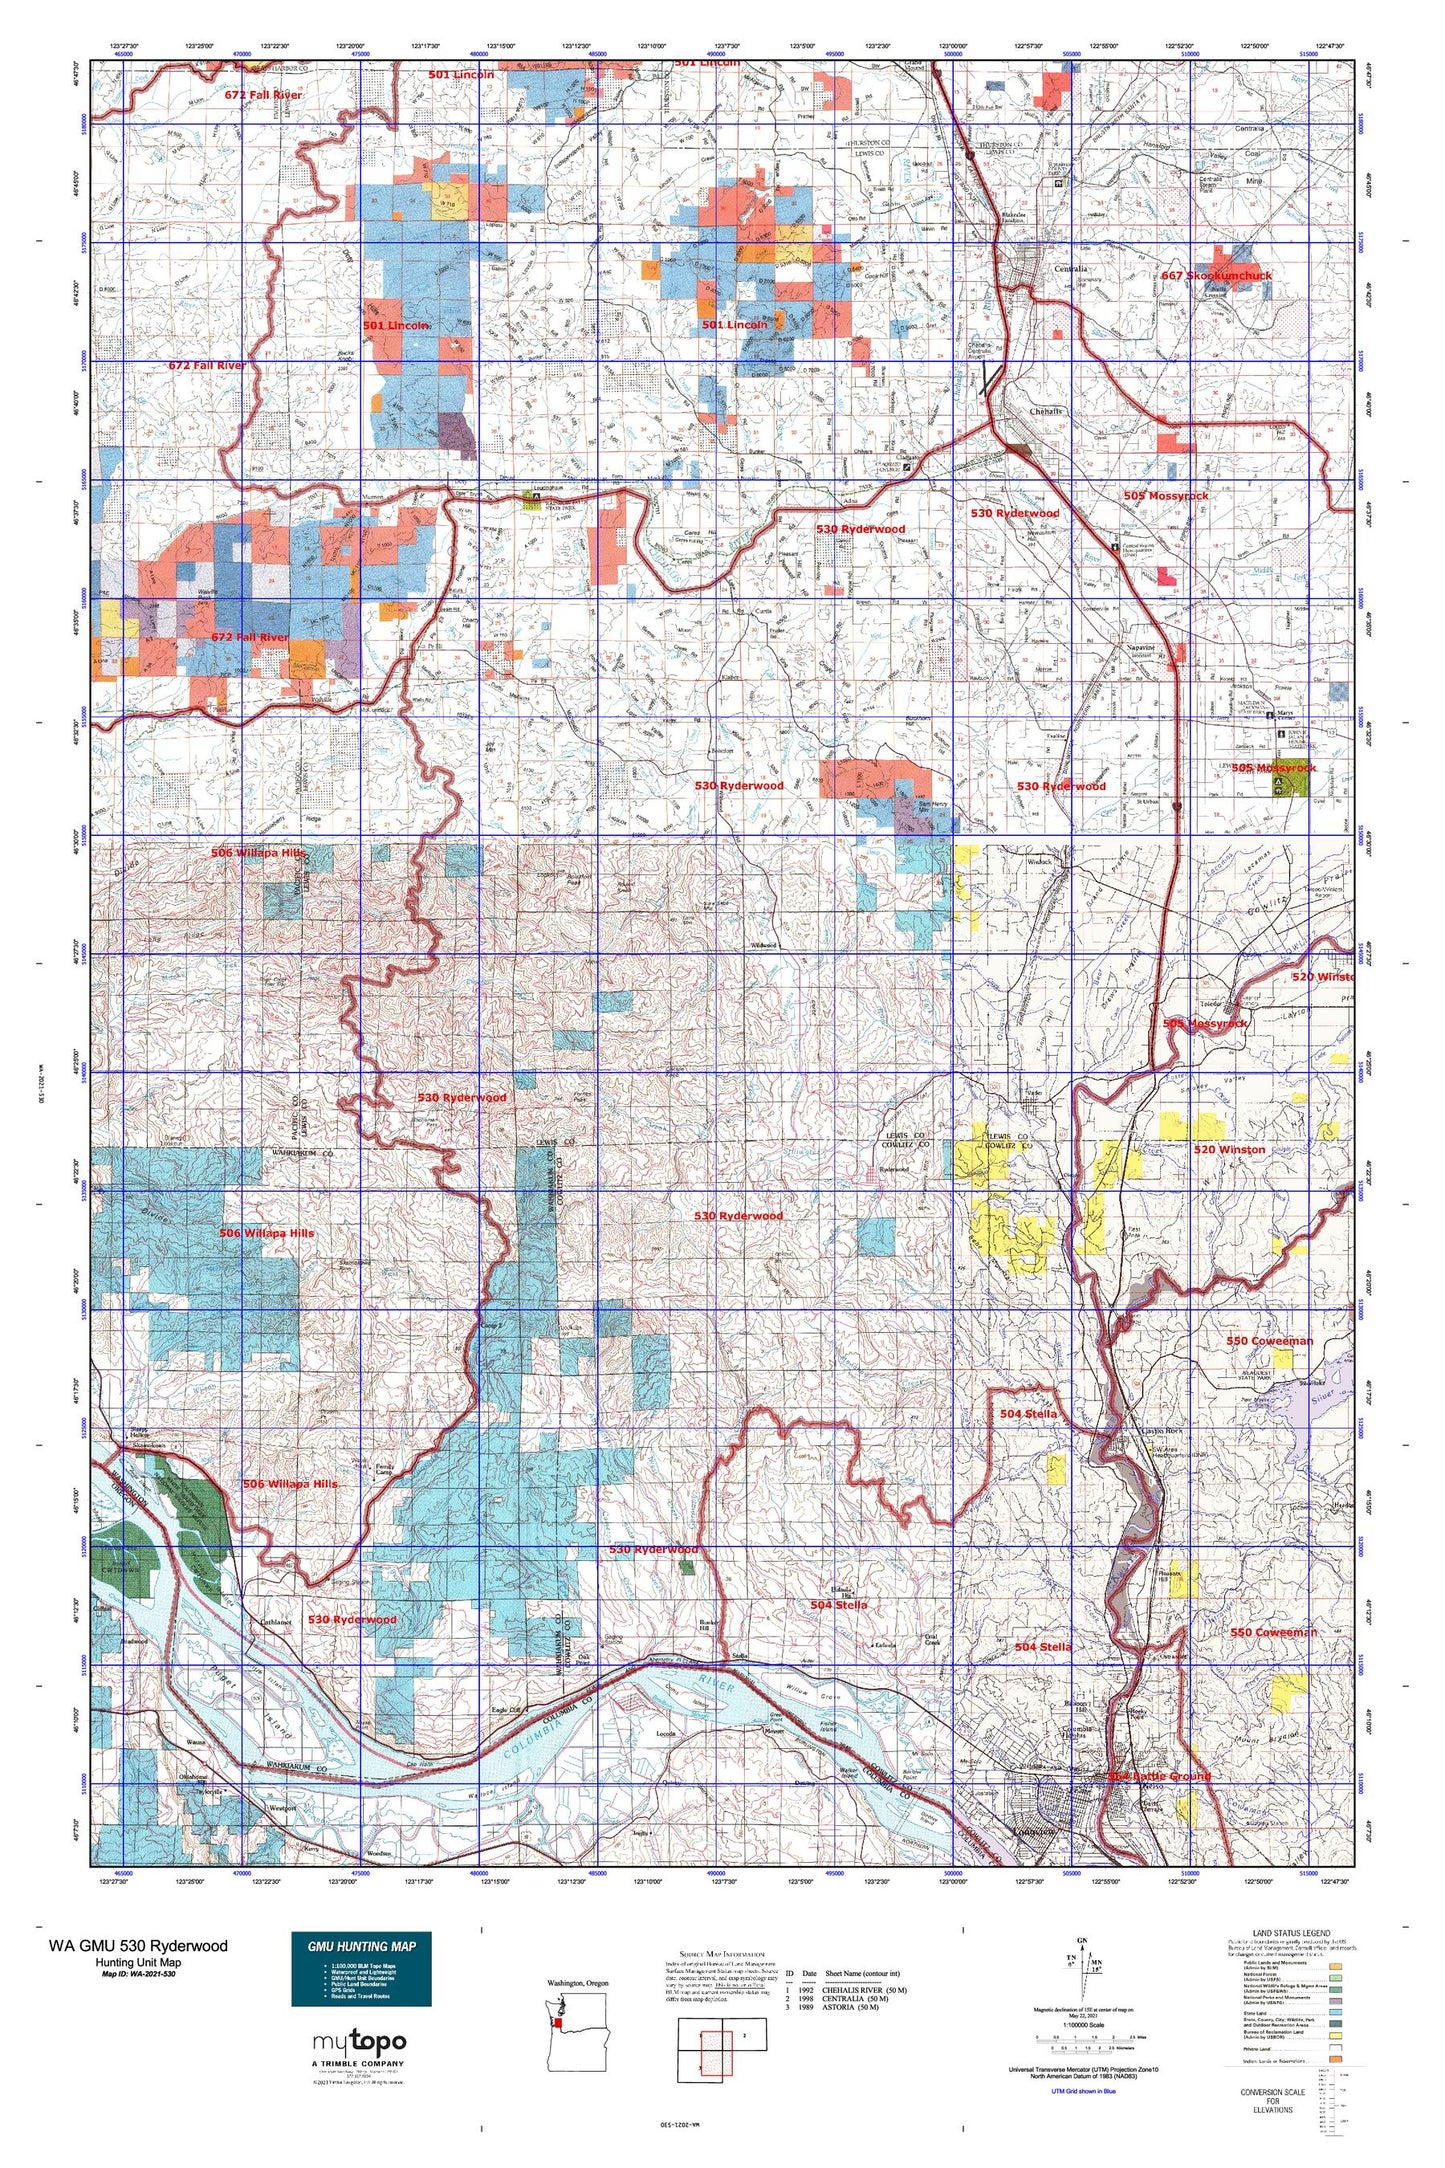 Washington GMU 530 Ryderwood Map Image